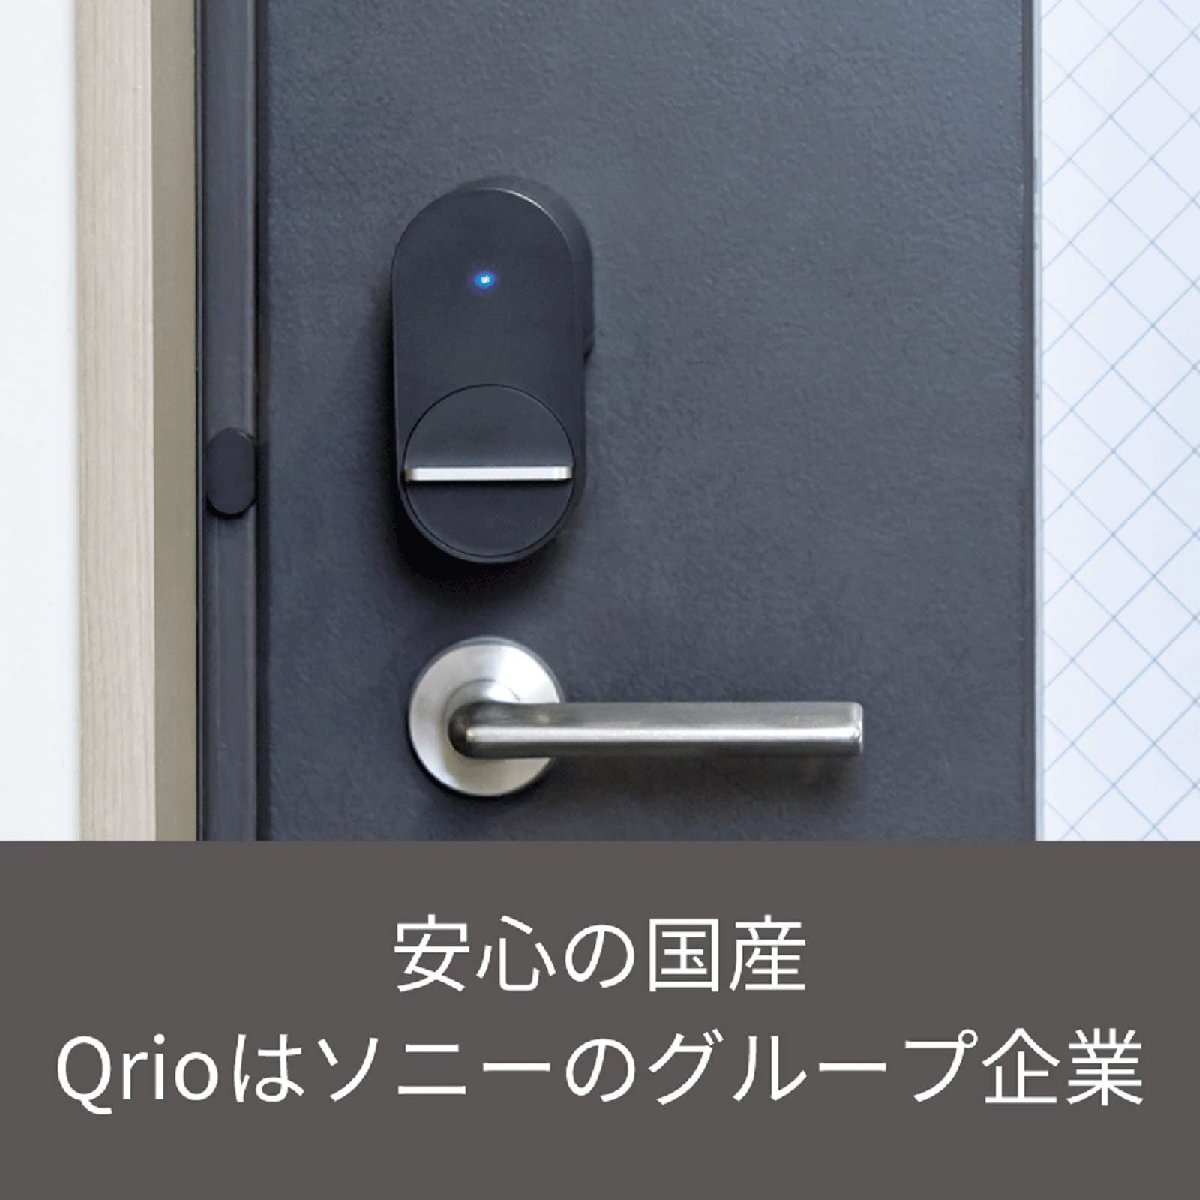 Qrio Hub キュリオハブ 自宅のカギを遠隔操作 外出中でも鍵の開閉をスマホに通知 スマートロック スマートホーム AppleWatch Ale_画像4